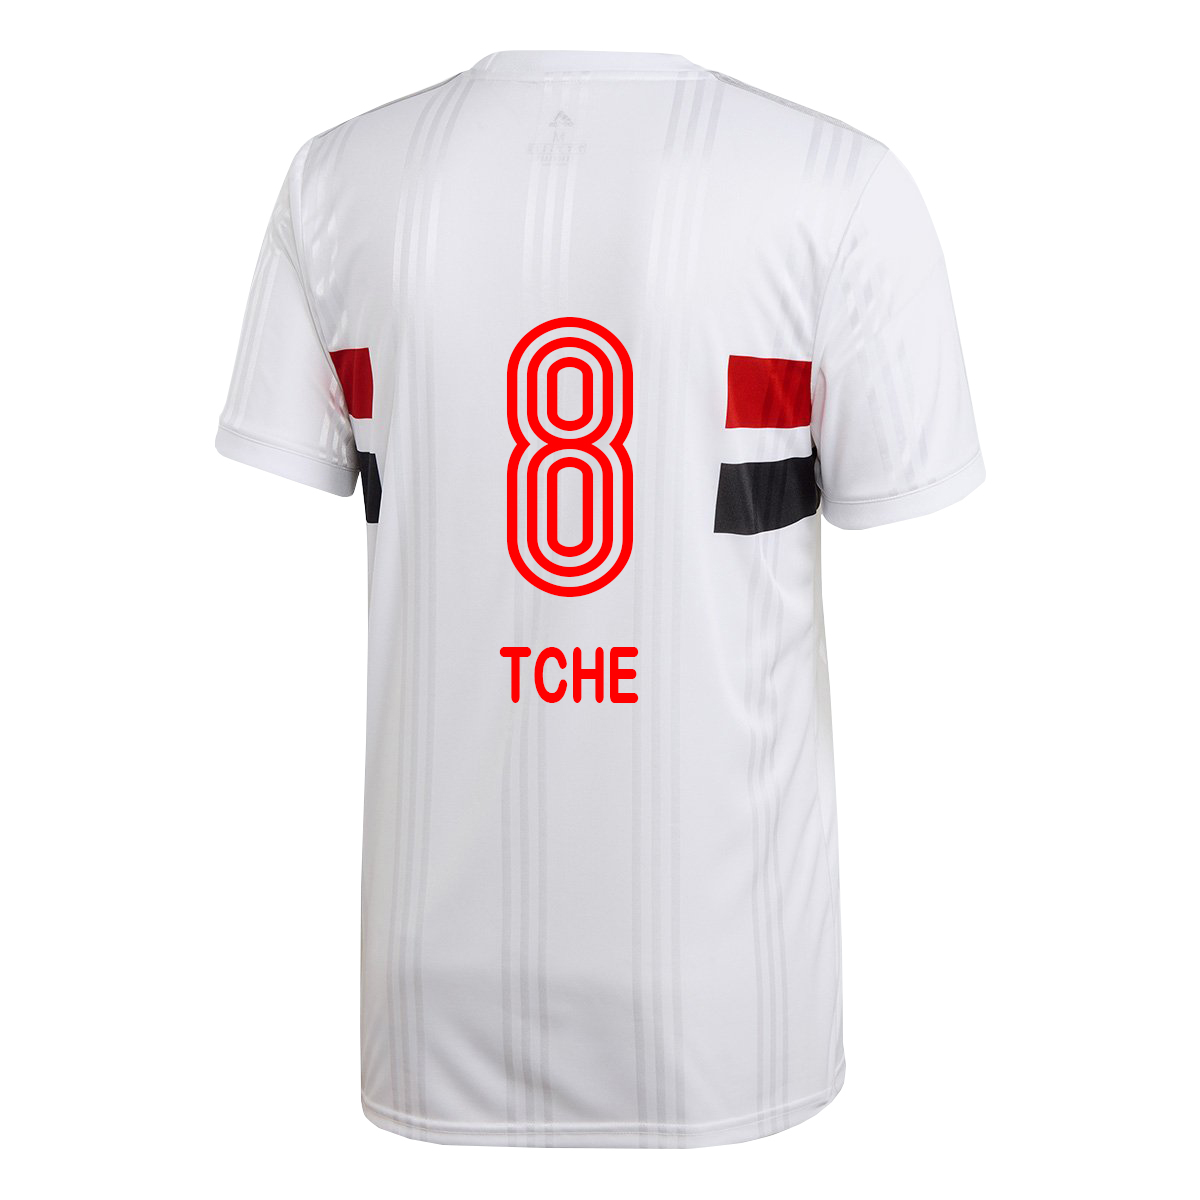 Herren Fußball Tche Tche #8 Heimtrikot Weiß Trikot 2020/21 Hemd